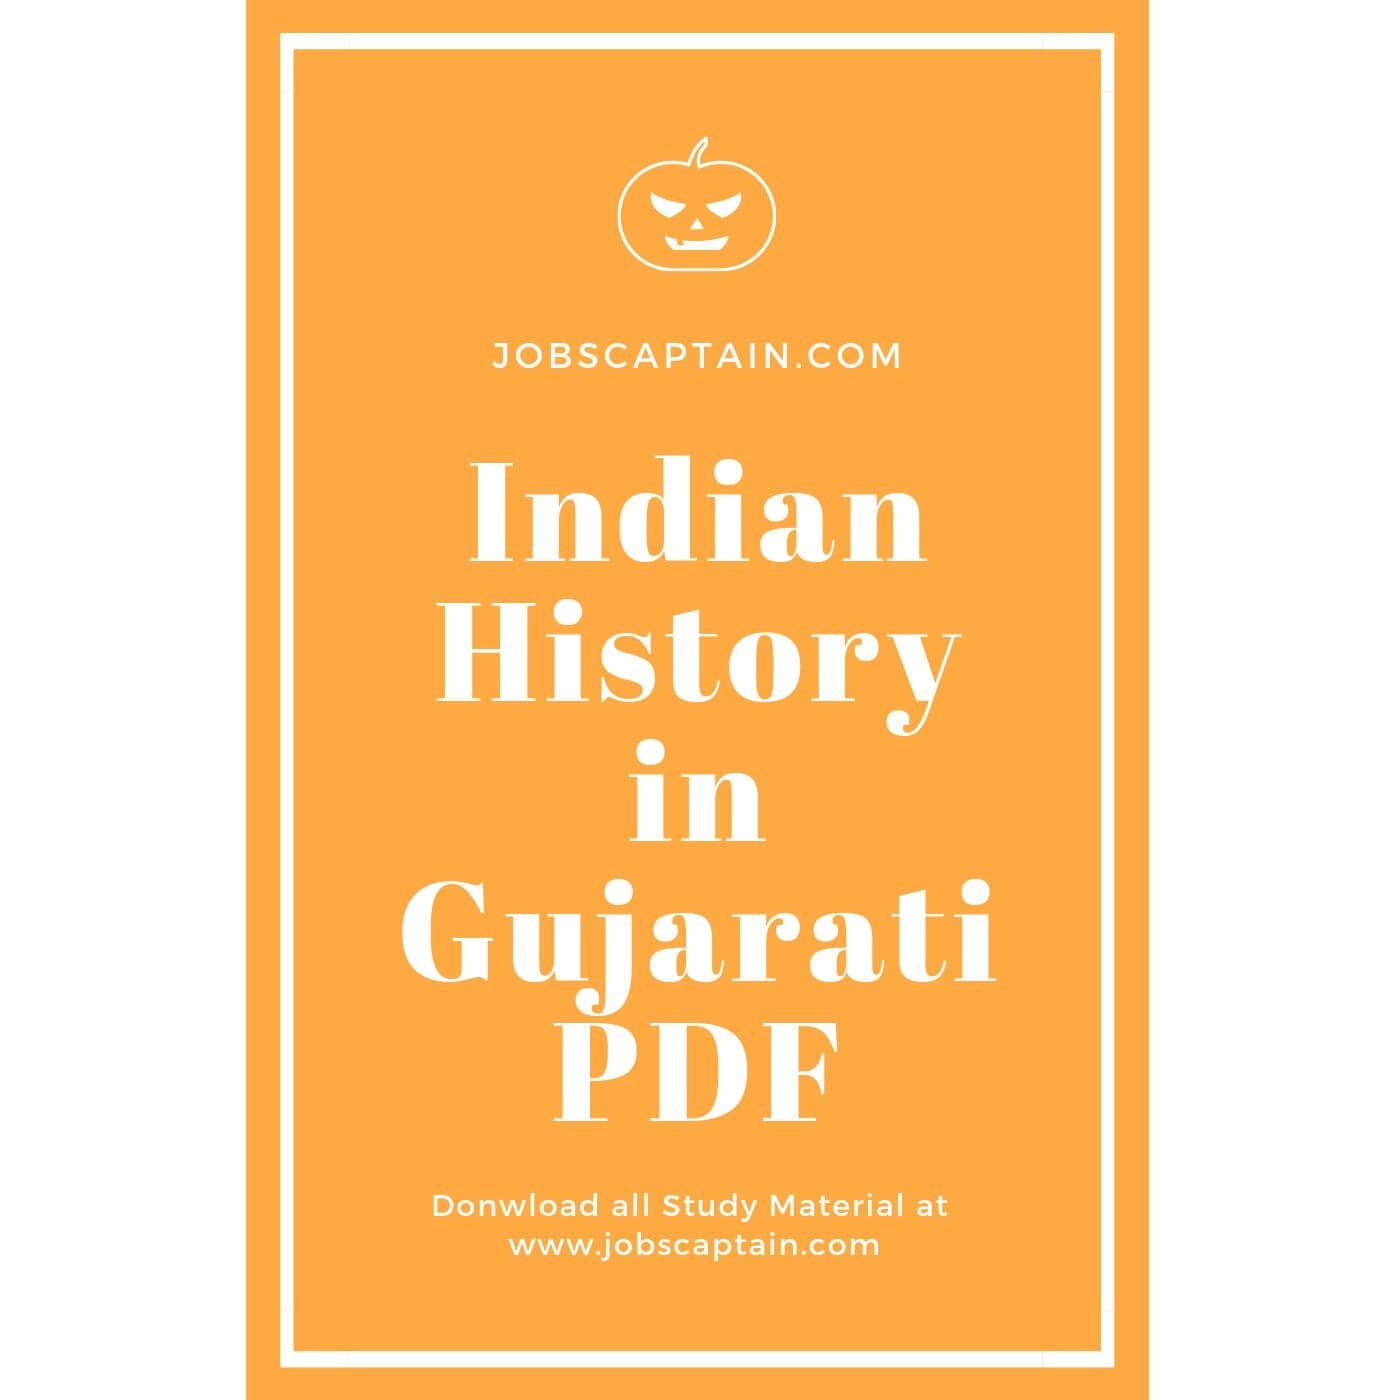 Indian History in Gujarati pdf